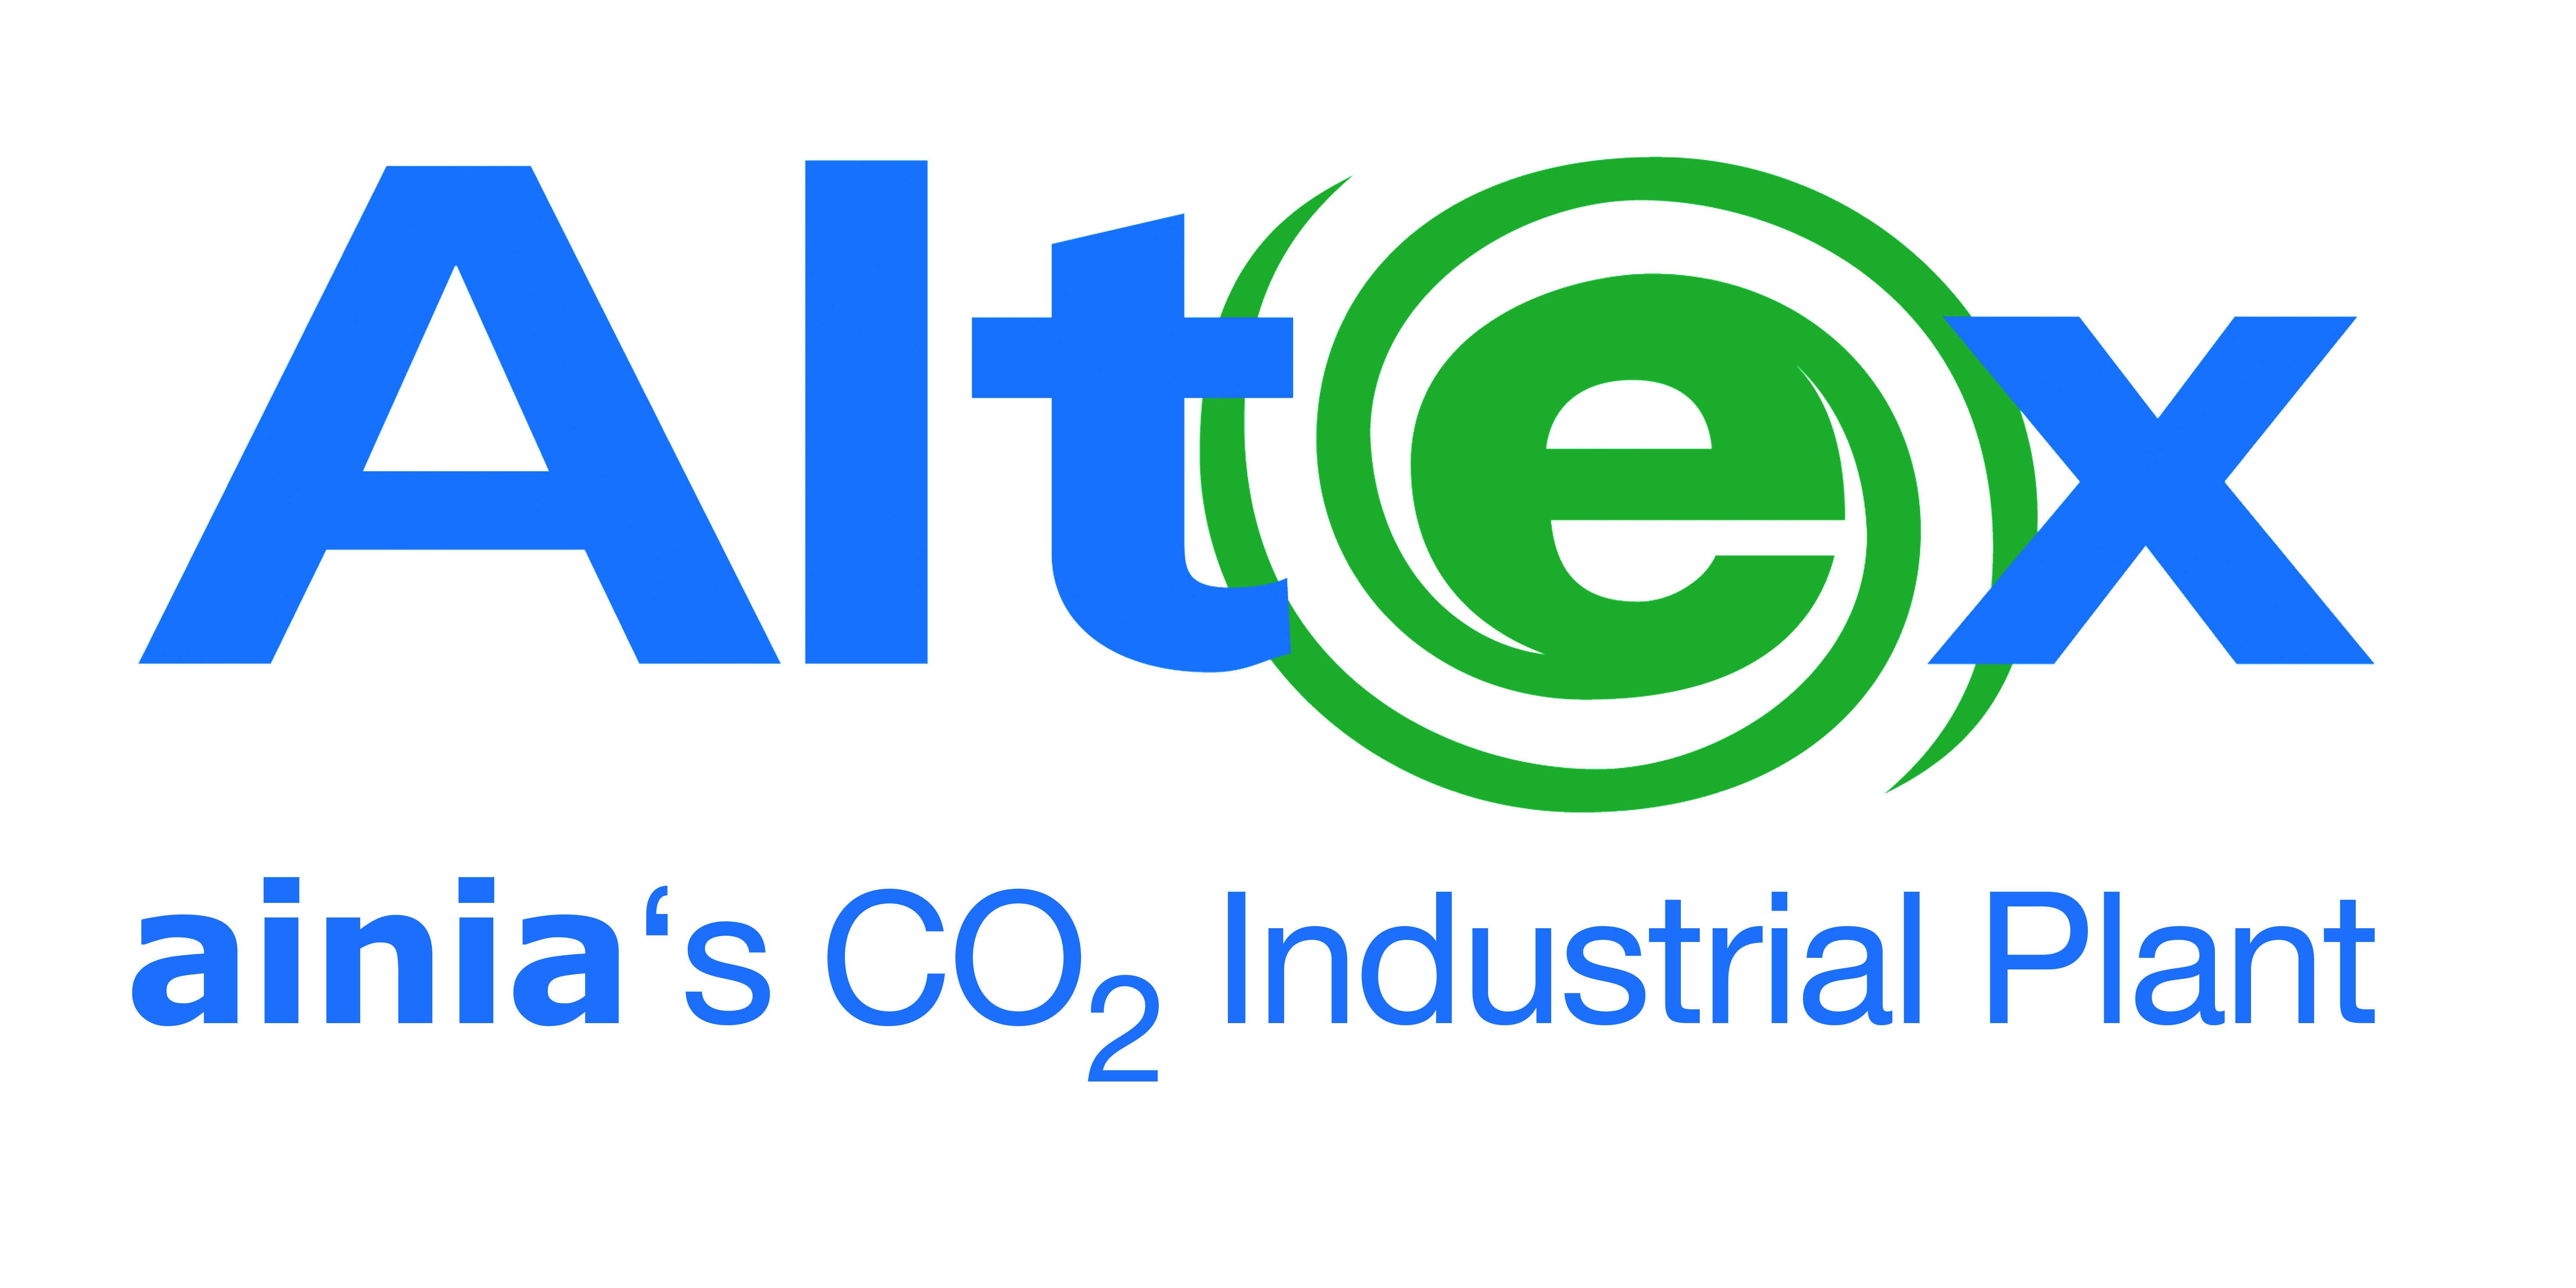 ALTEX (AINIA´s CO2 industrial plant)